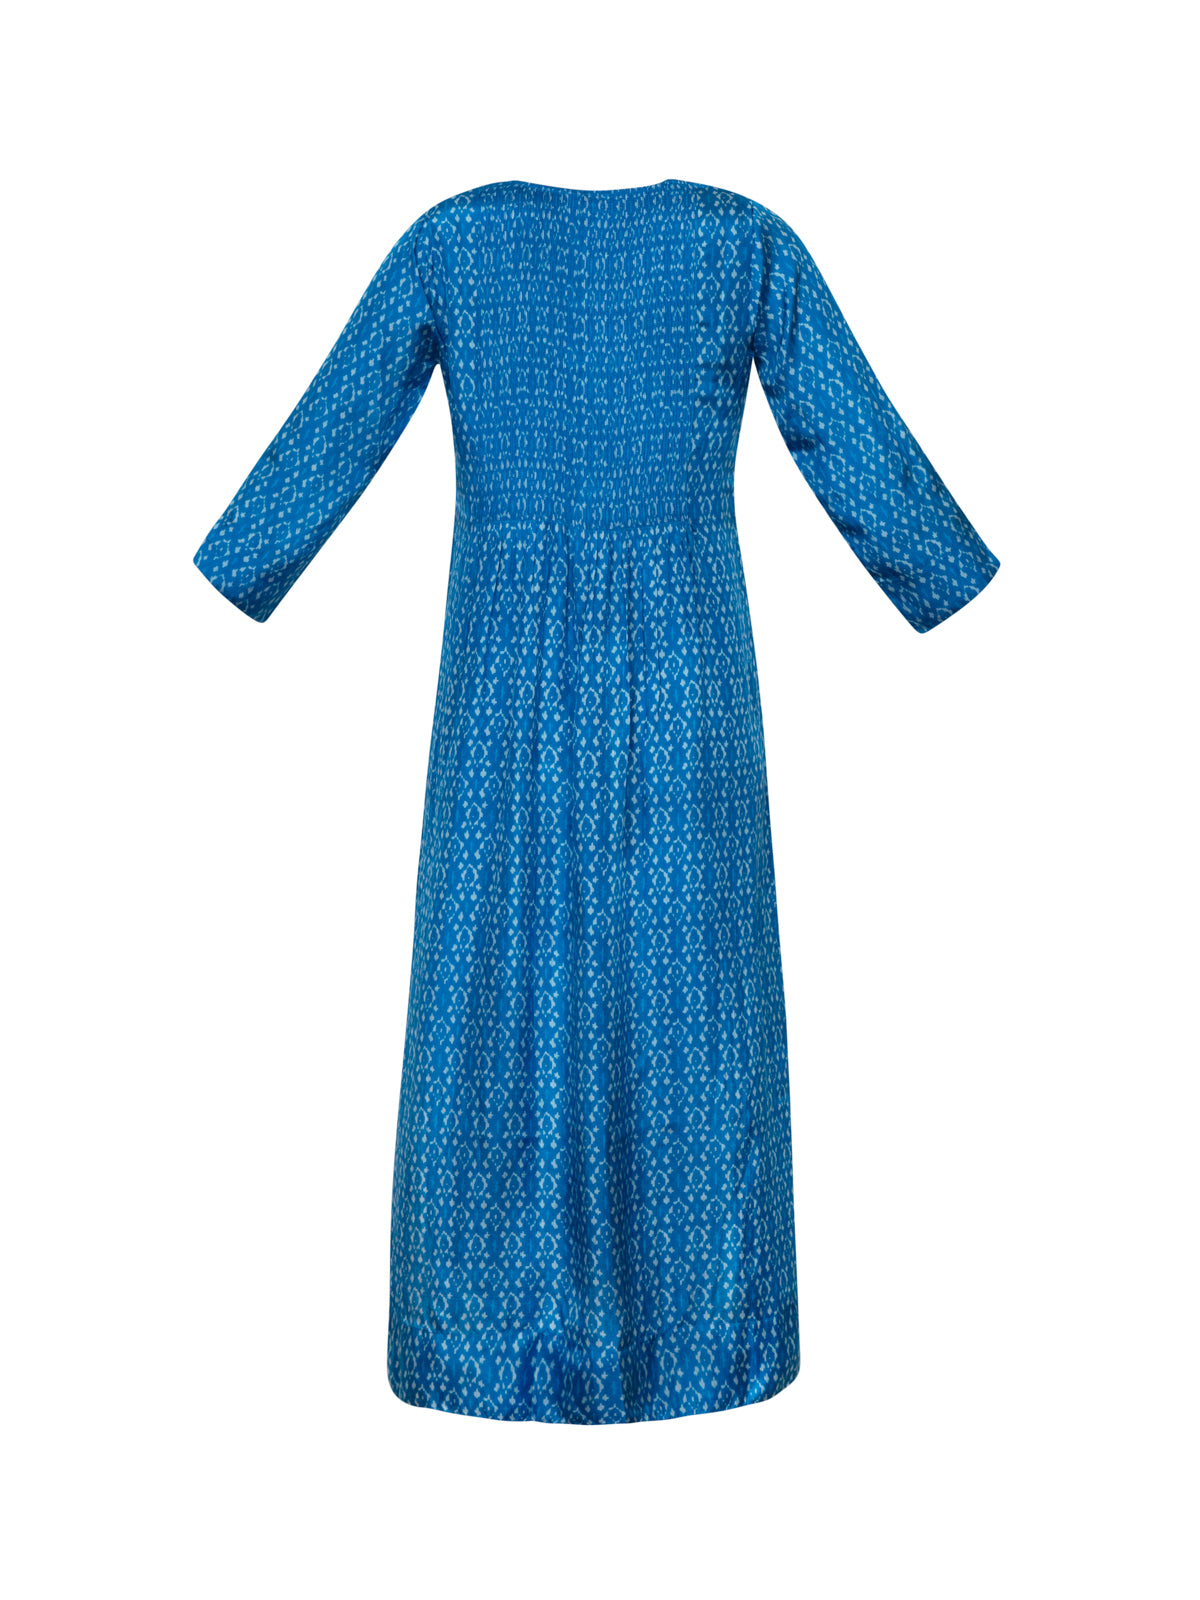 Heidi Silk Dress - Ikat Blue